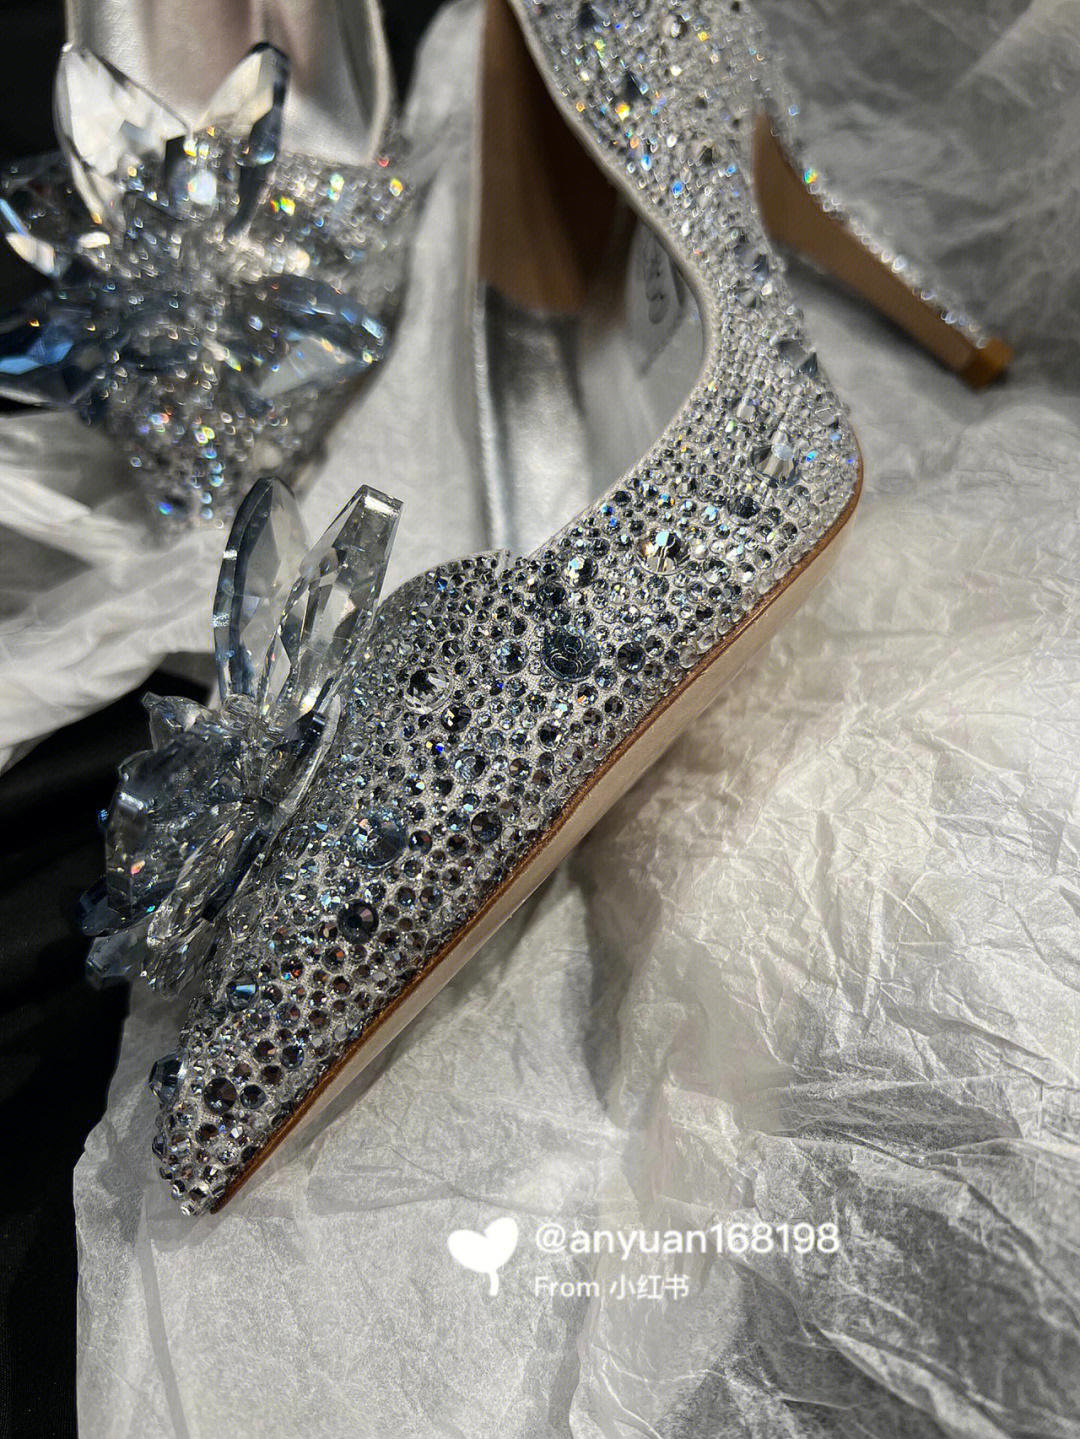 jc水晶鞋,灰姑娘就是公主!童话世界里的美好,现实生活中也会拥有!